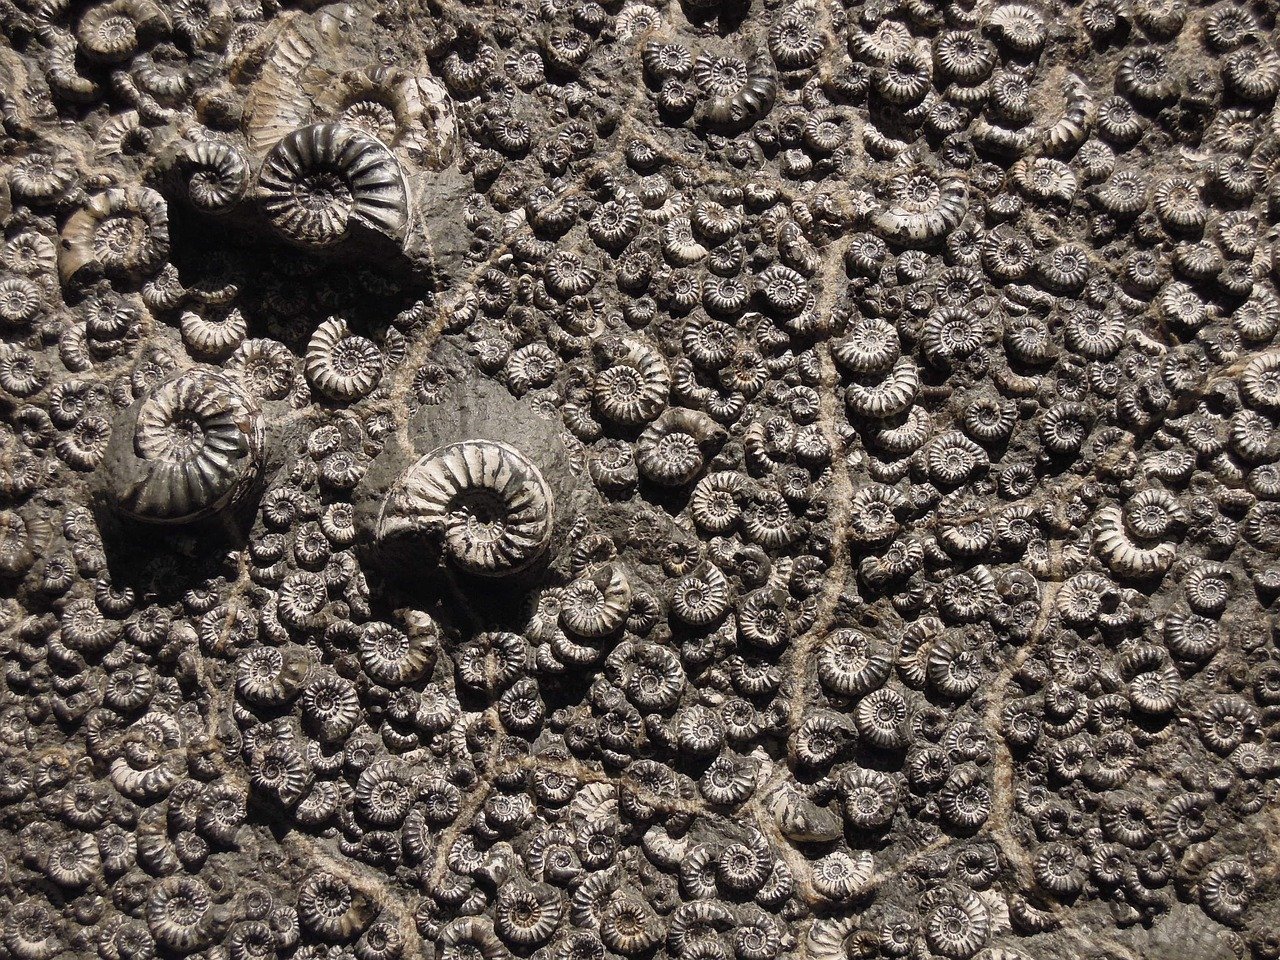 fossil-1969912_1280.jpg